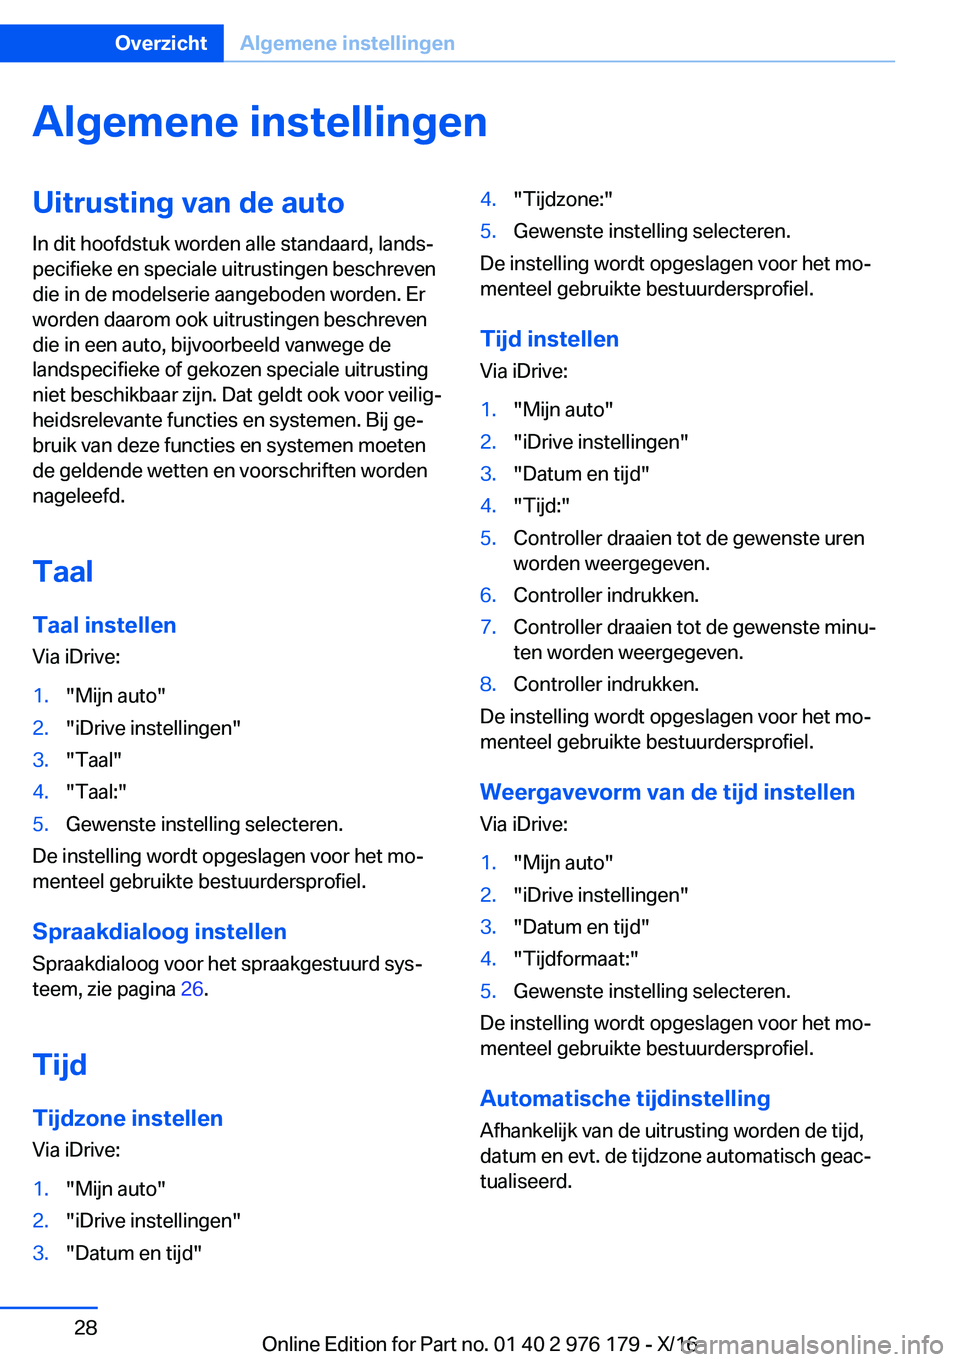 BMW X5 M 2017  Instructieboekjes (in Dutch) �A�l�g�e�m�e�n�e��i�n�s�t�e�l�l�i�n�g�e�n�U�i�t�r�u�s�t�i�n�g��v�a�n��d�e��a�u�t�o
�I�n� �d�i�t� �h�o�o�f�d�s�t�u�k� �w�o�r�d�e�n� �a�l�l�e� �s�t�a�n�d�a�a�r�d�,� �l�a�n�d�sj
�p�e�c�i�f�i�e�k�e� 